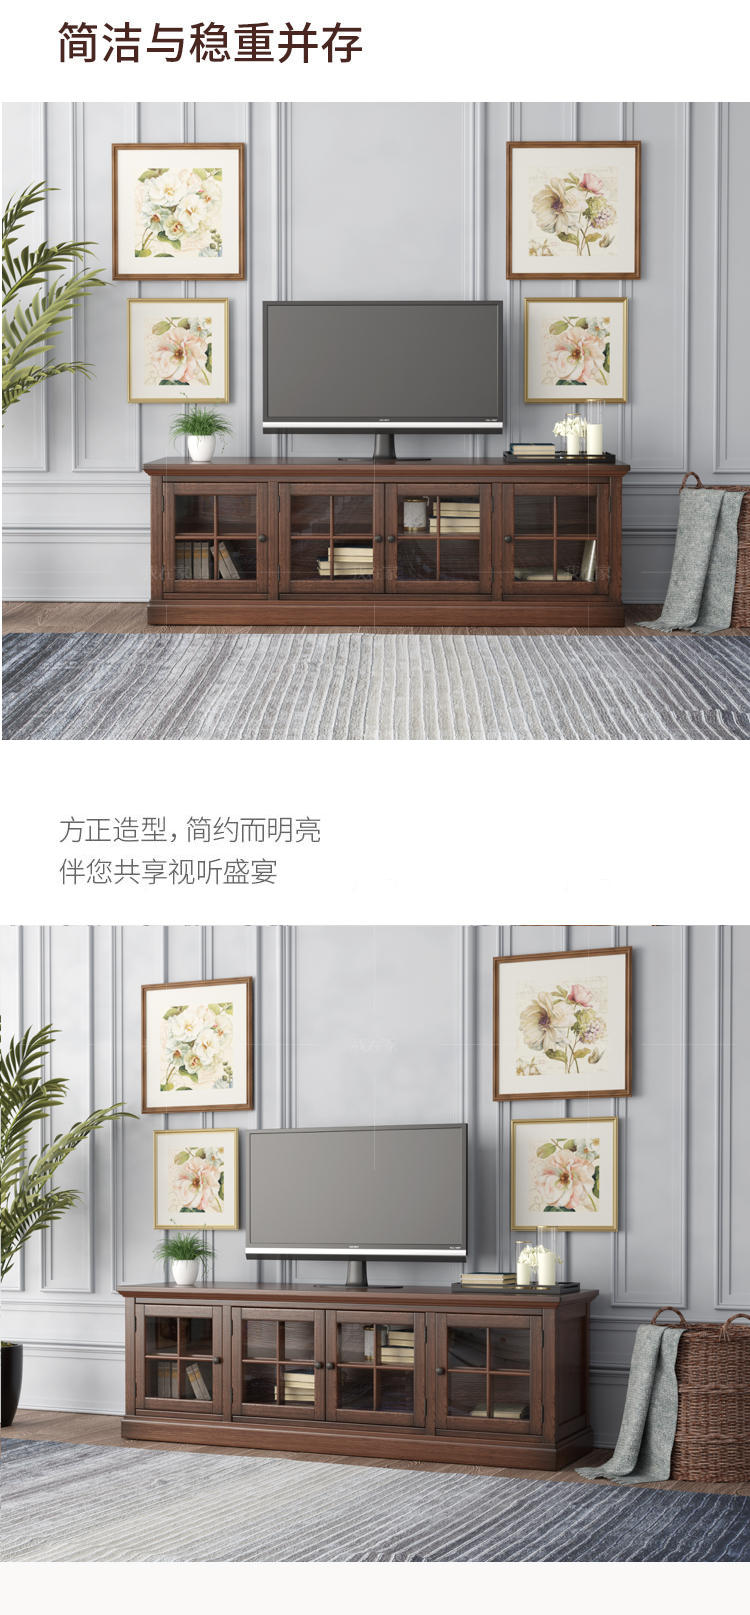 简约美式风格艾米电视柜的家具详细介绍